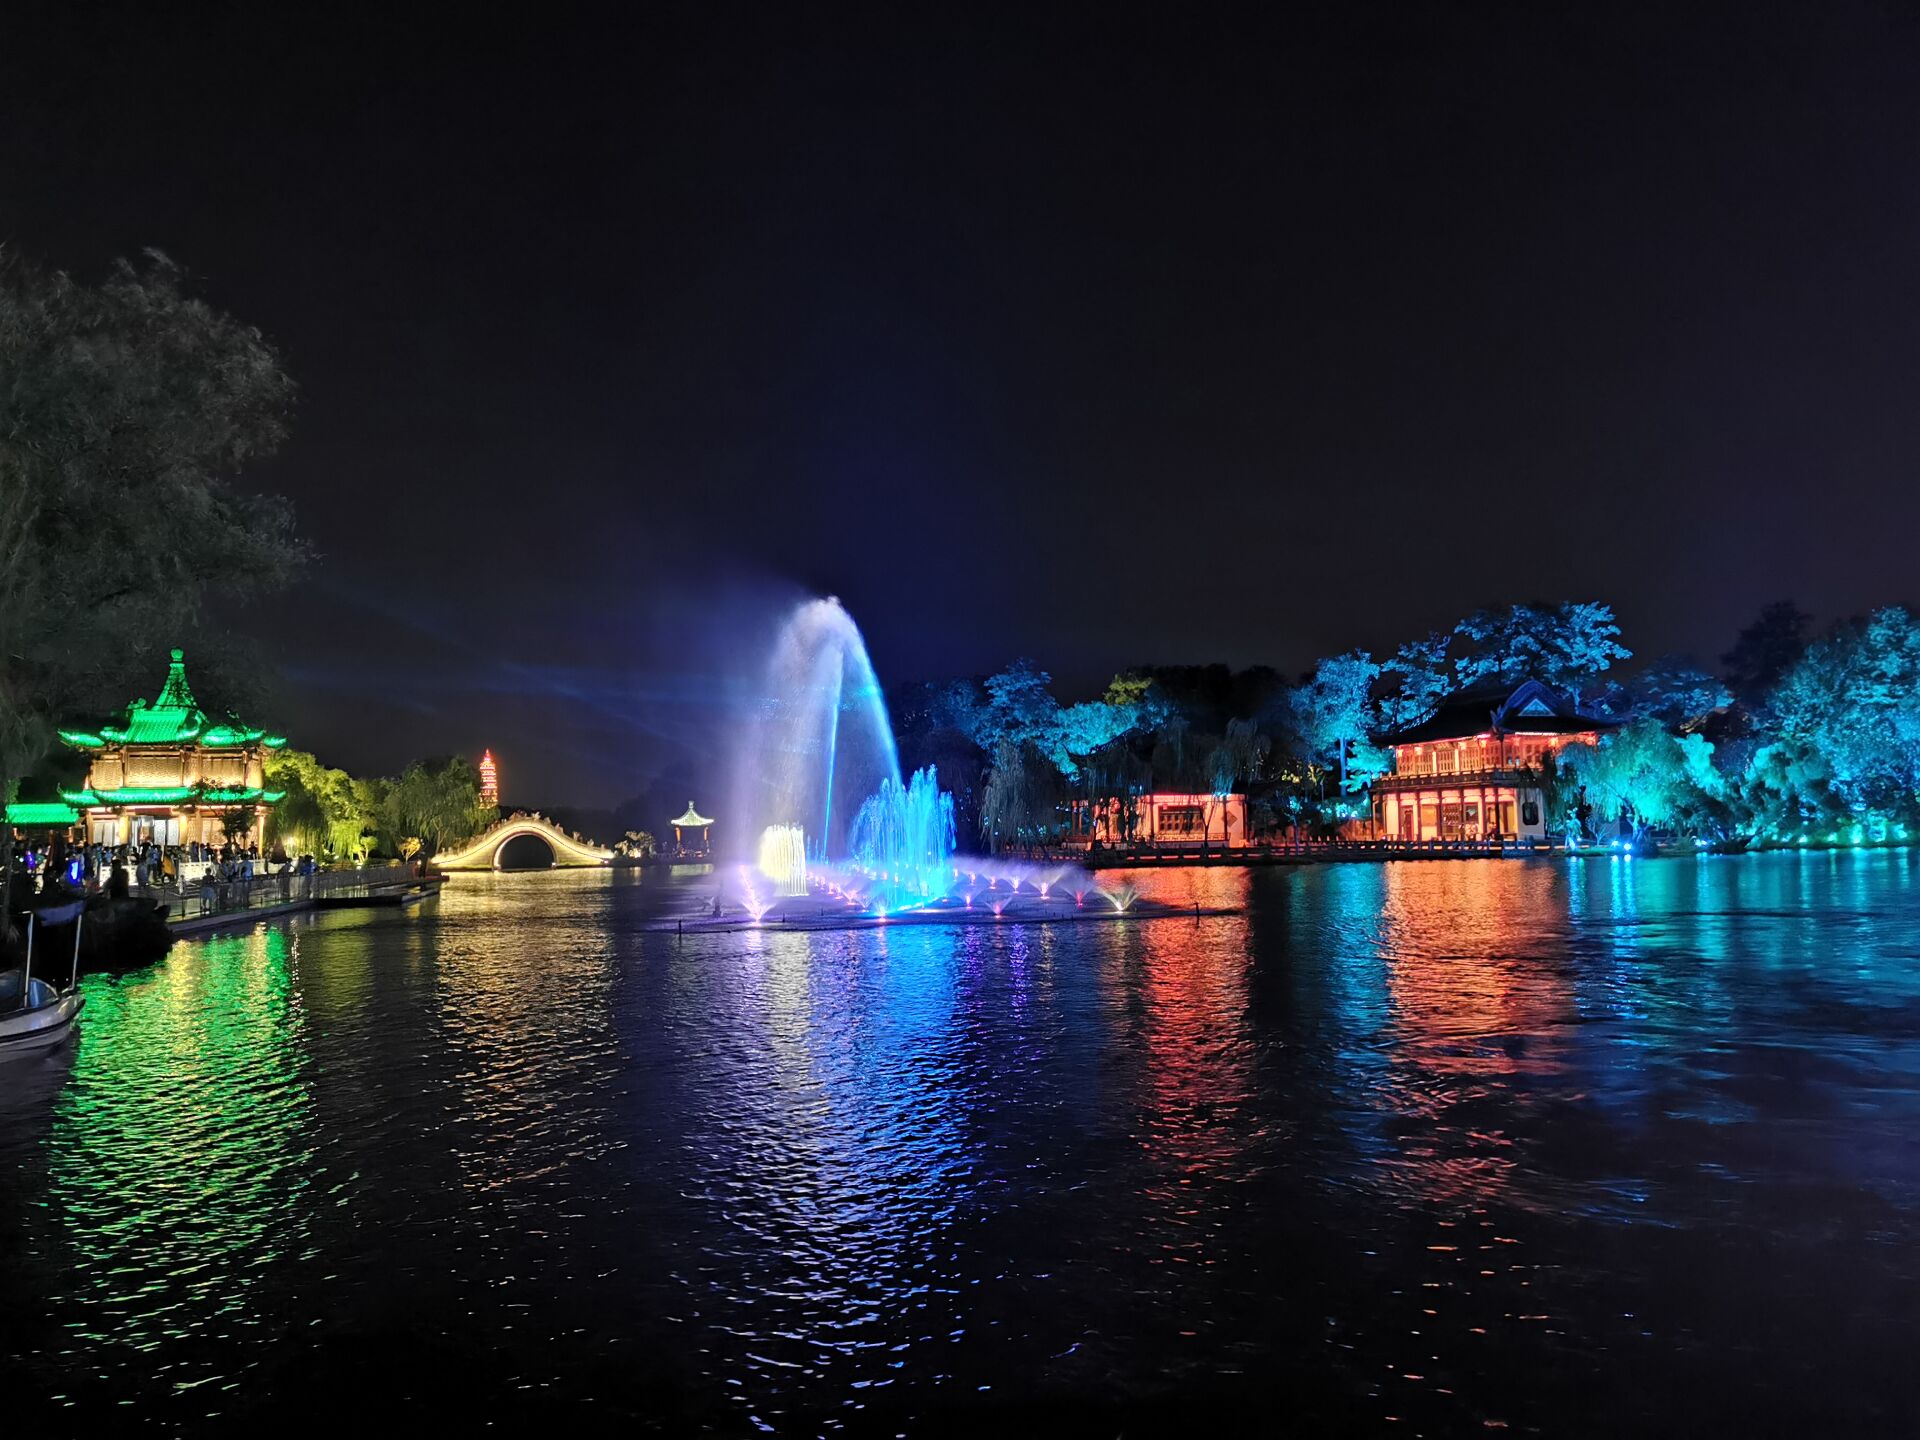 扬州廋西湖夜游之二十四桥1.jpg